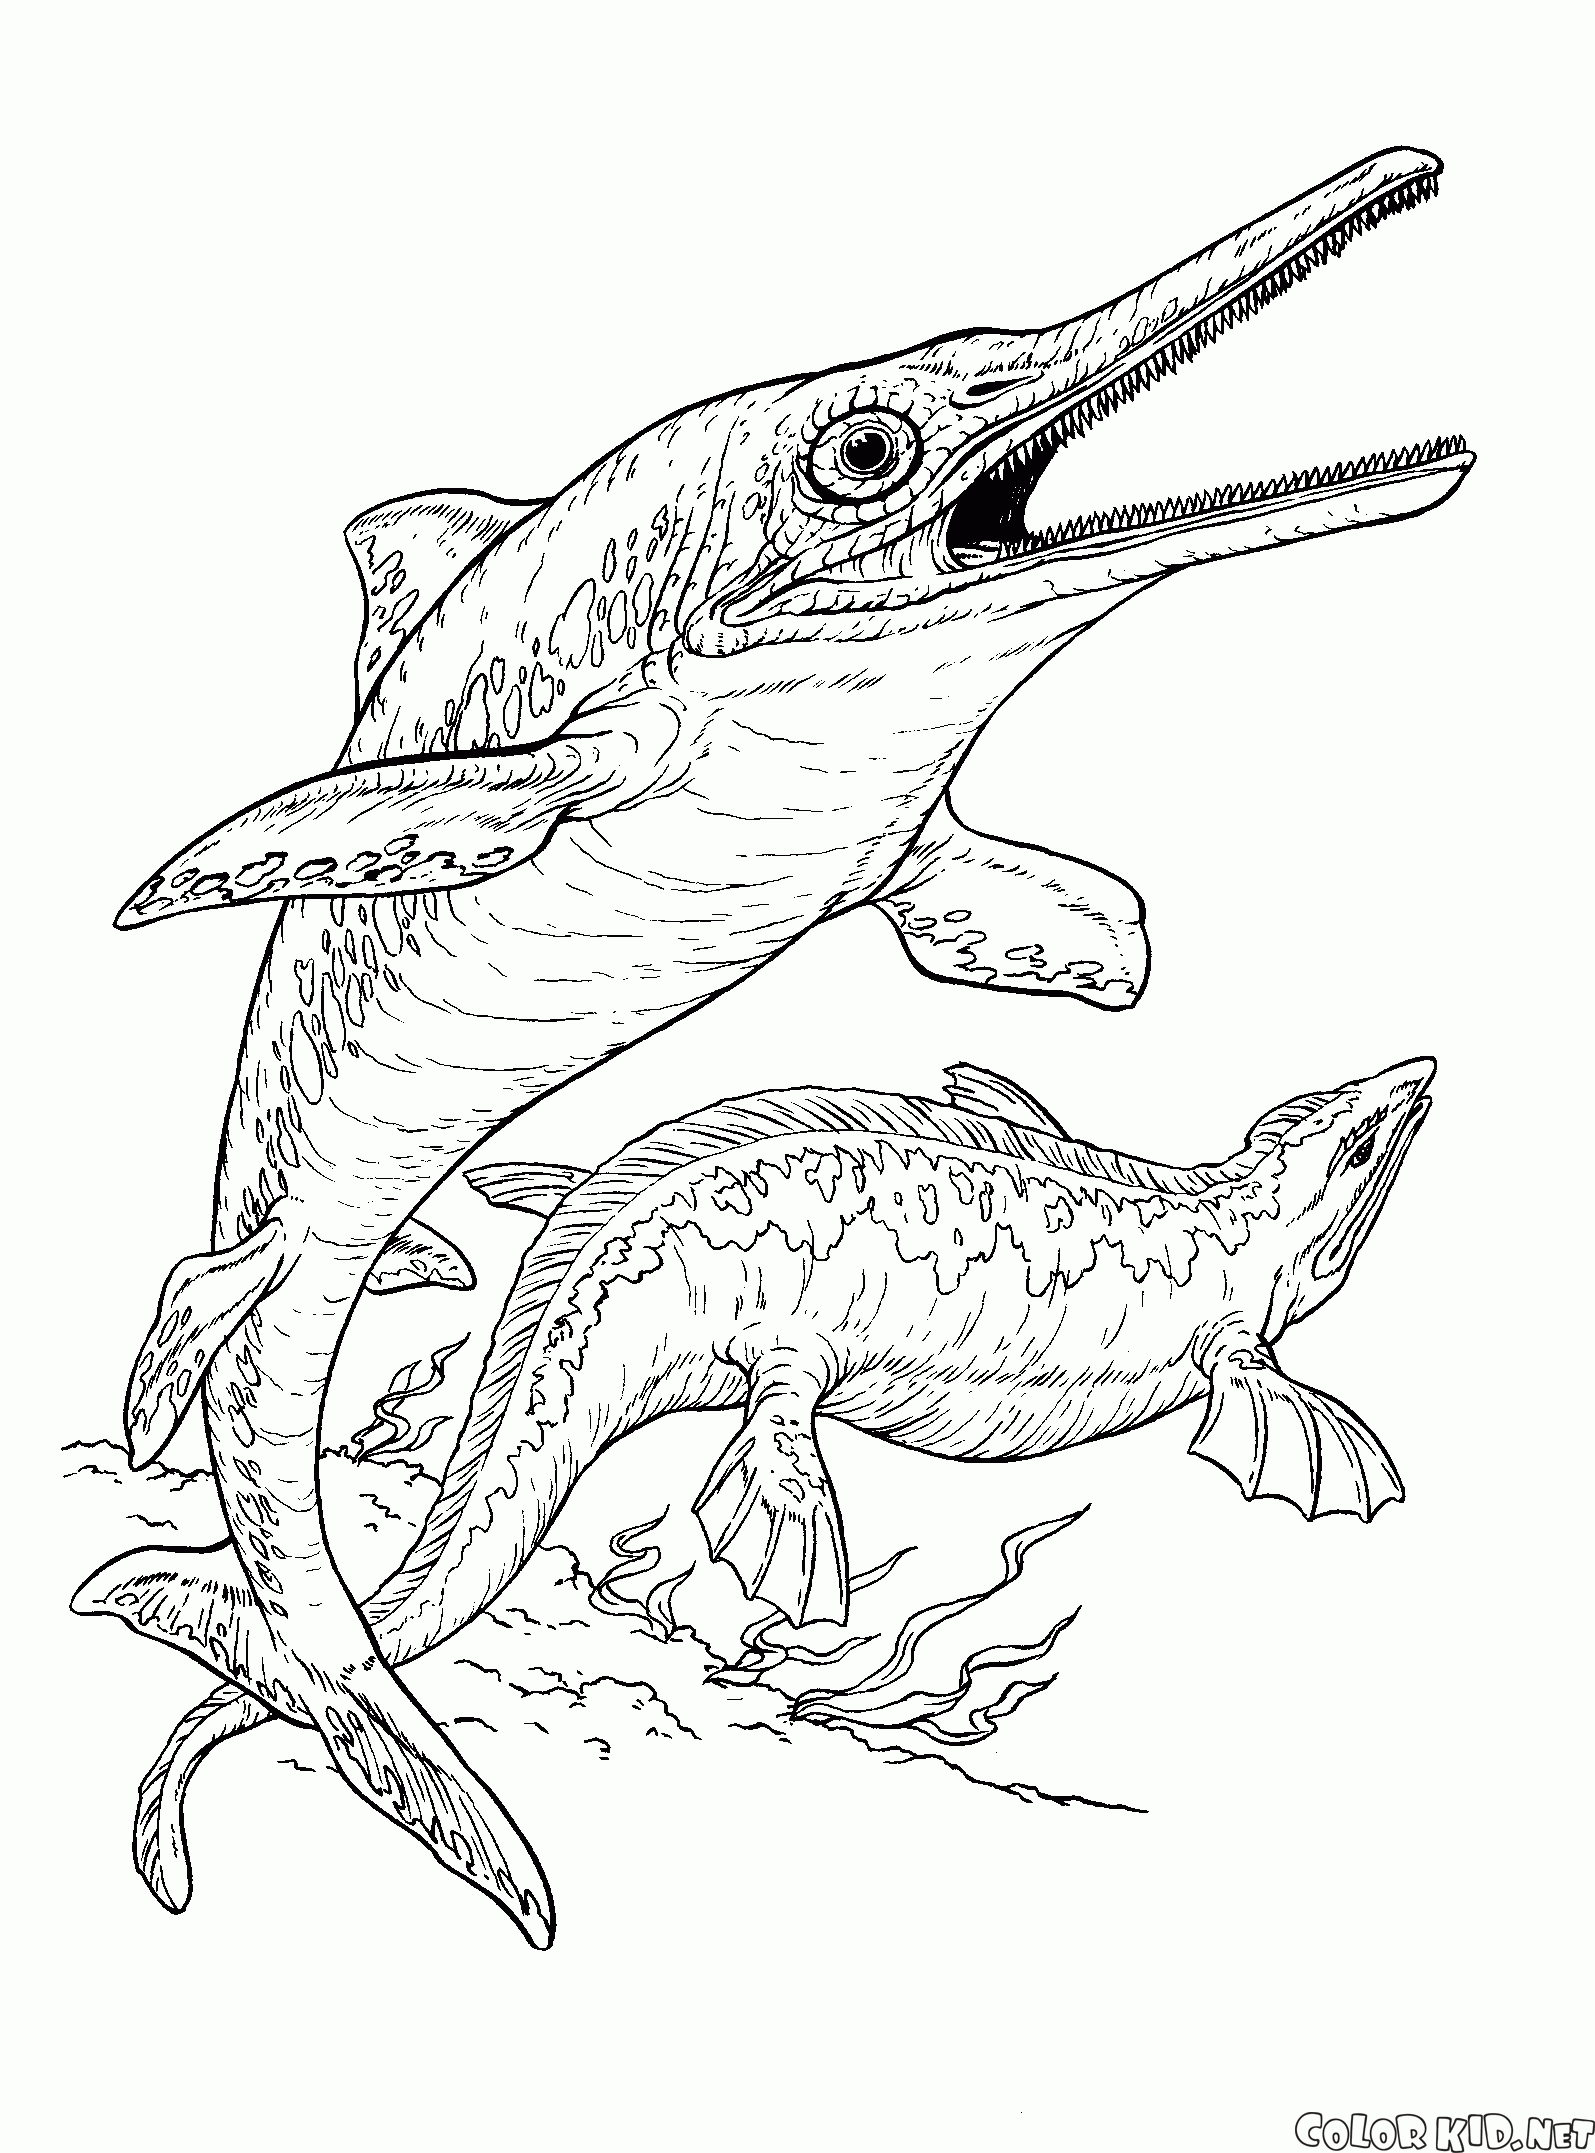 Ichthyosaur und plesiosaur